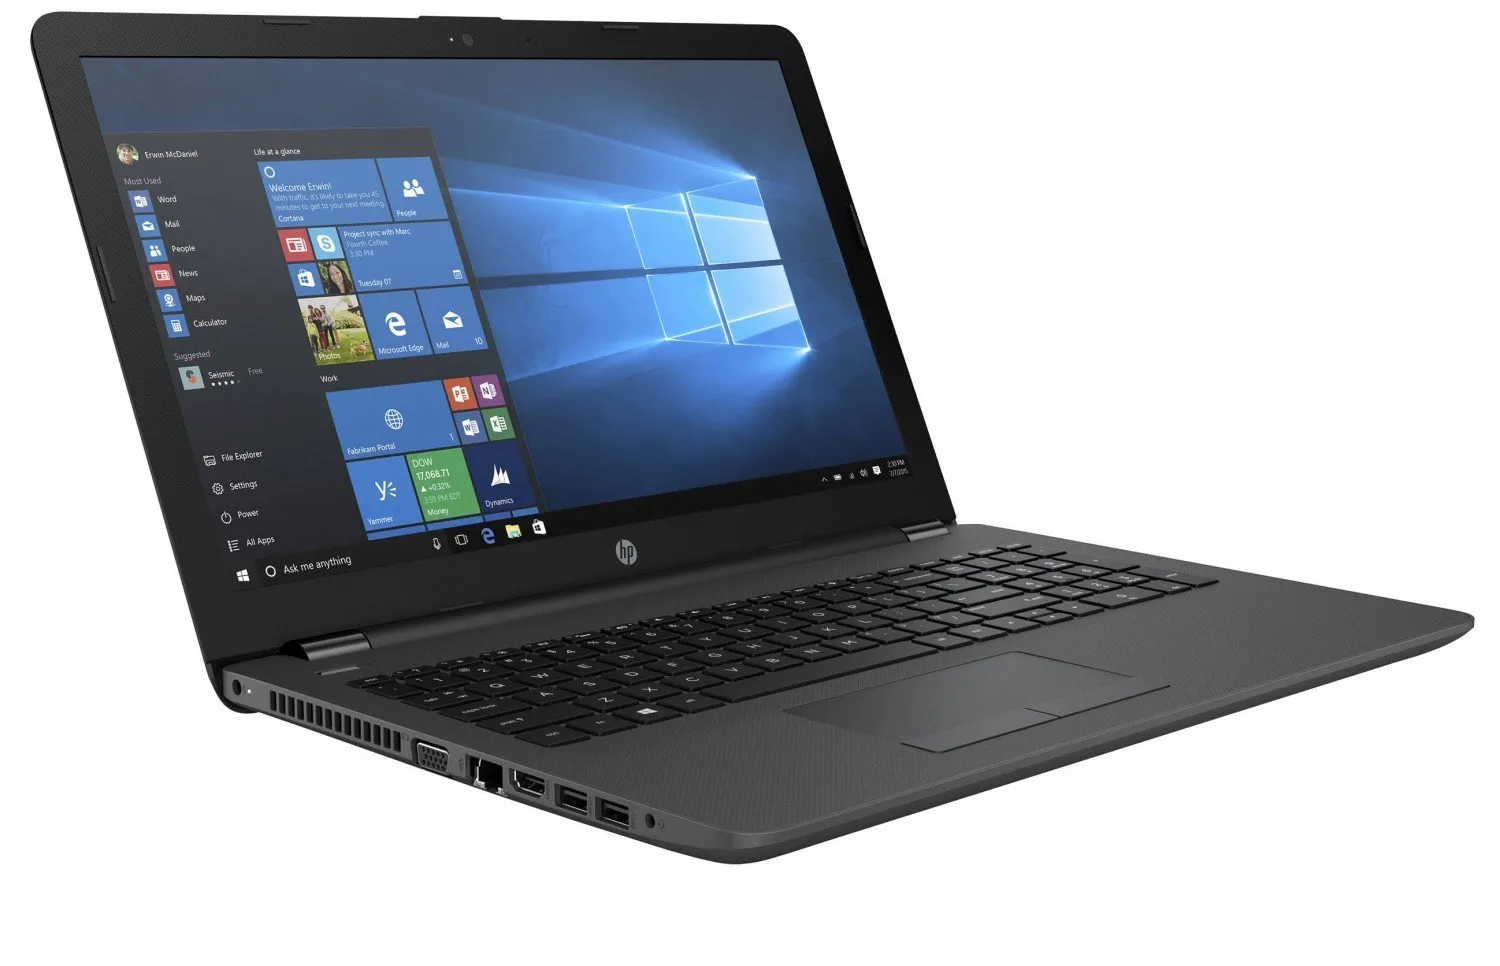 Ноутбук HP 455 G1 /AMD A10-5750/8 GB DDR4/ 500GB HDD /15.6" HD LED/ 2GB AMD Radeon HD 8750M/DVD/RUS+ Bag#7